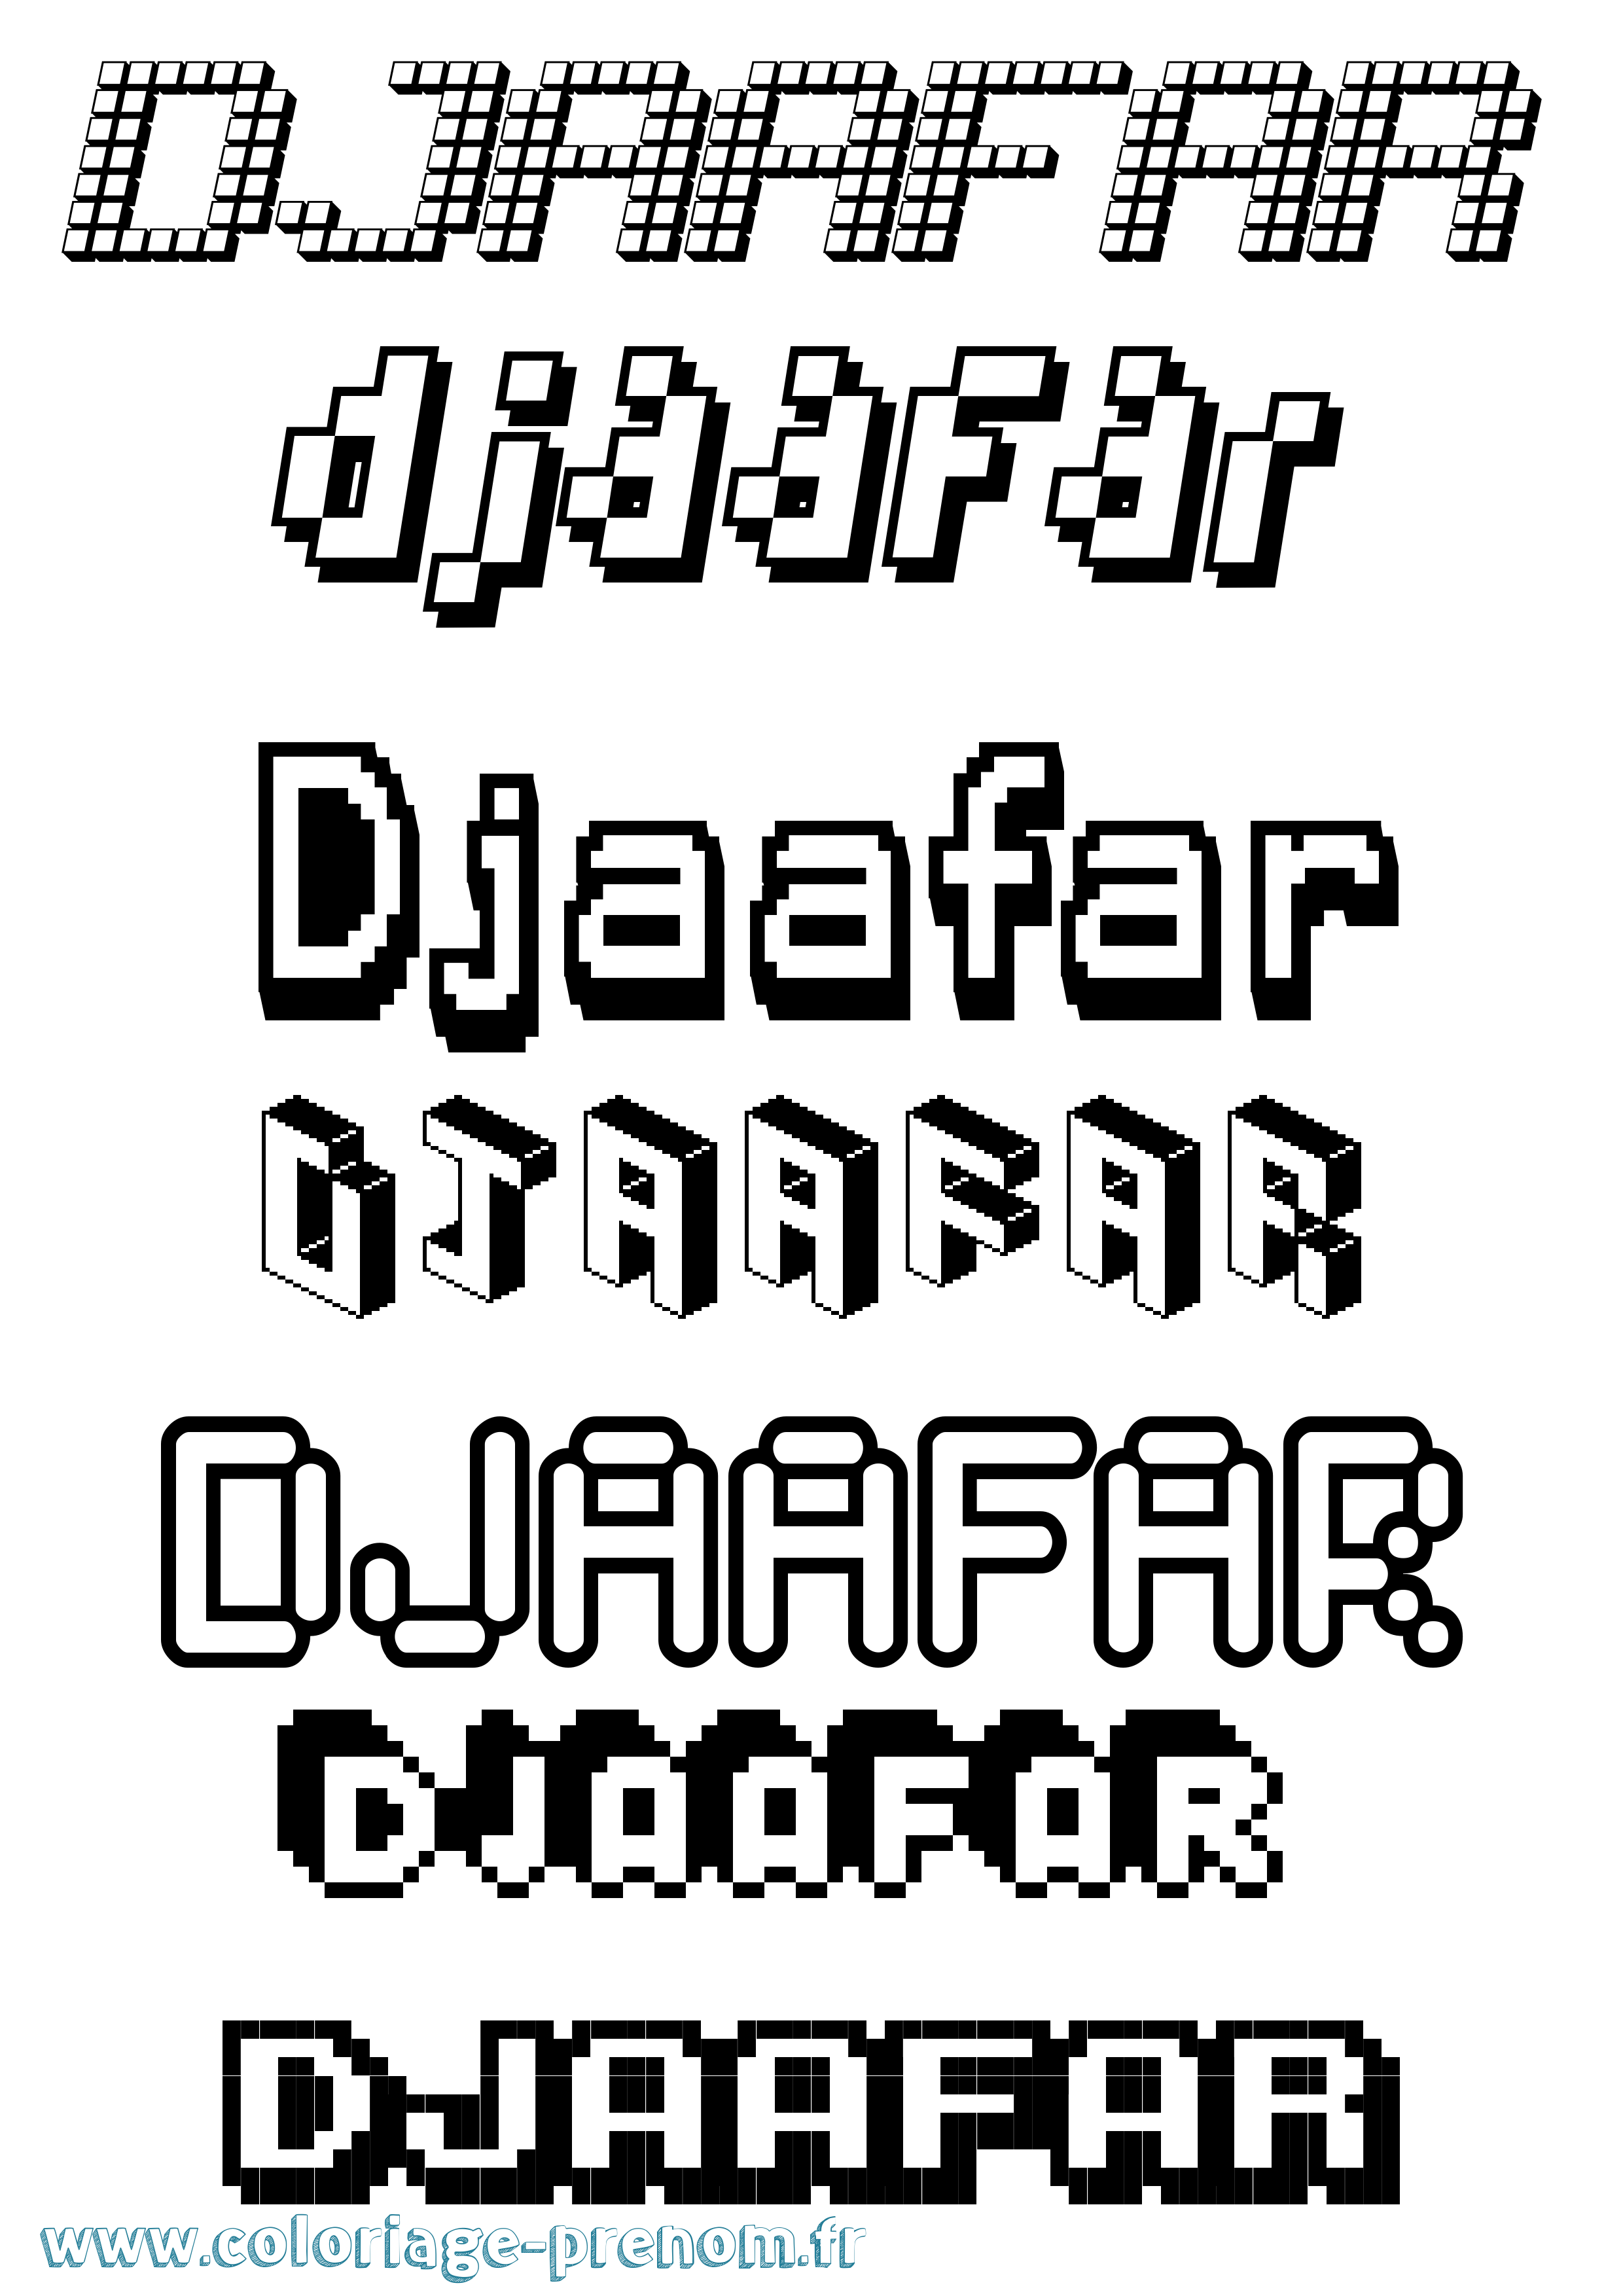 Coloriage prénom Djaafar Pixel